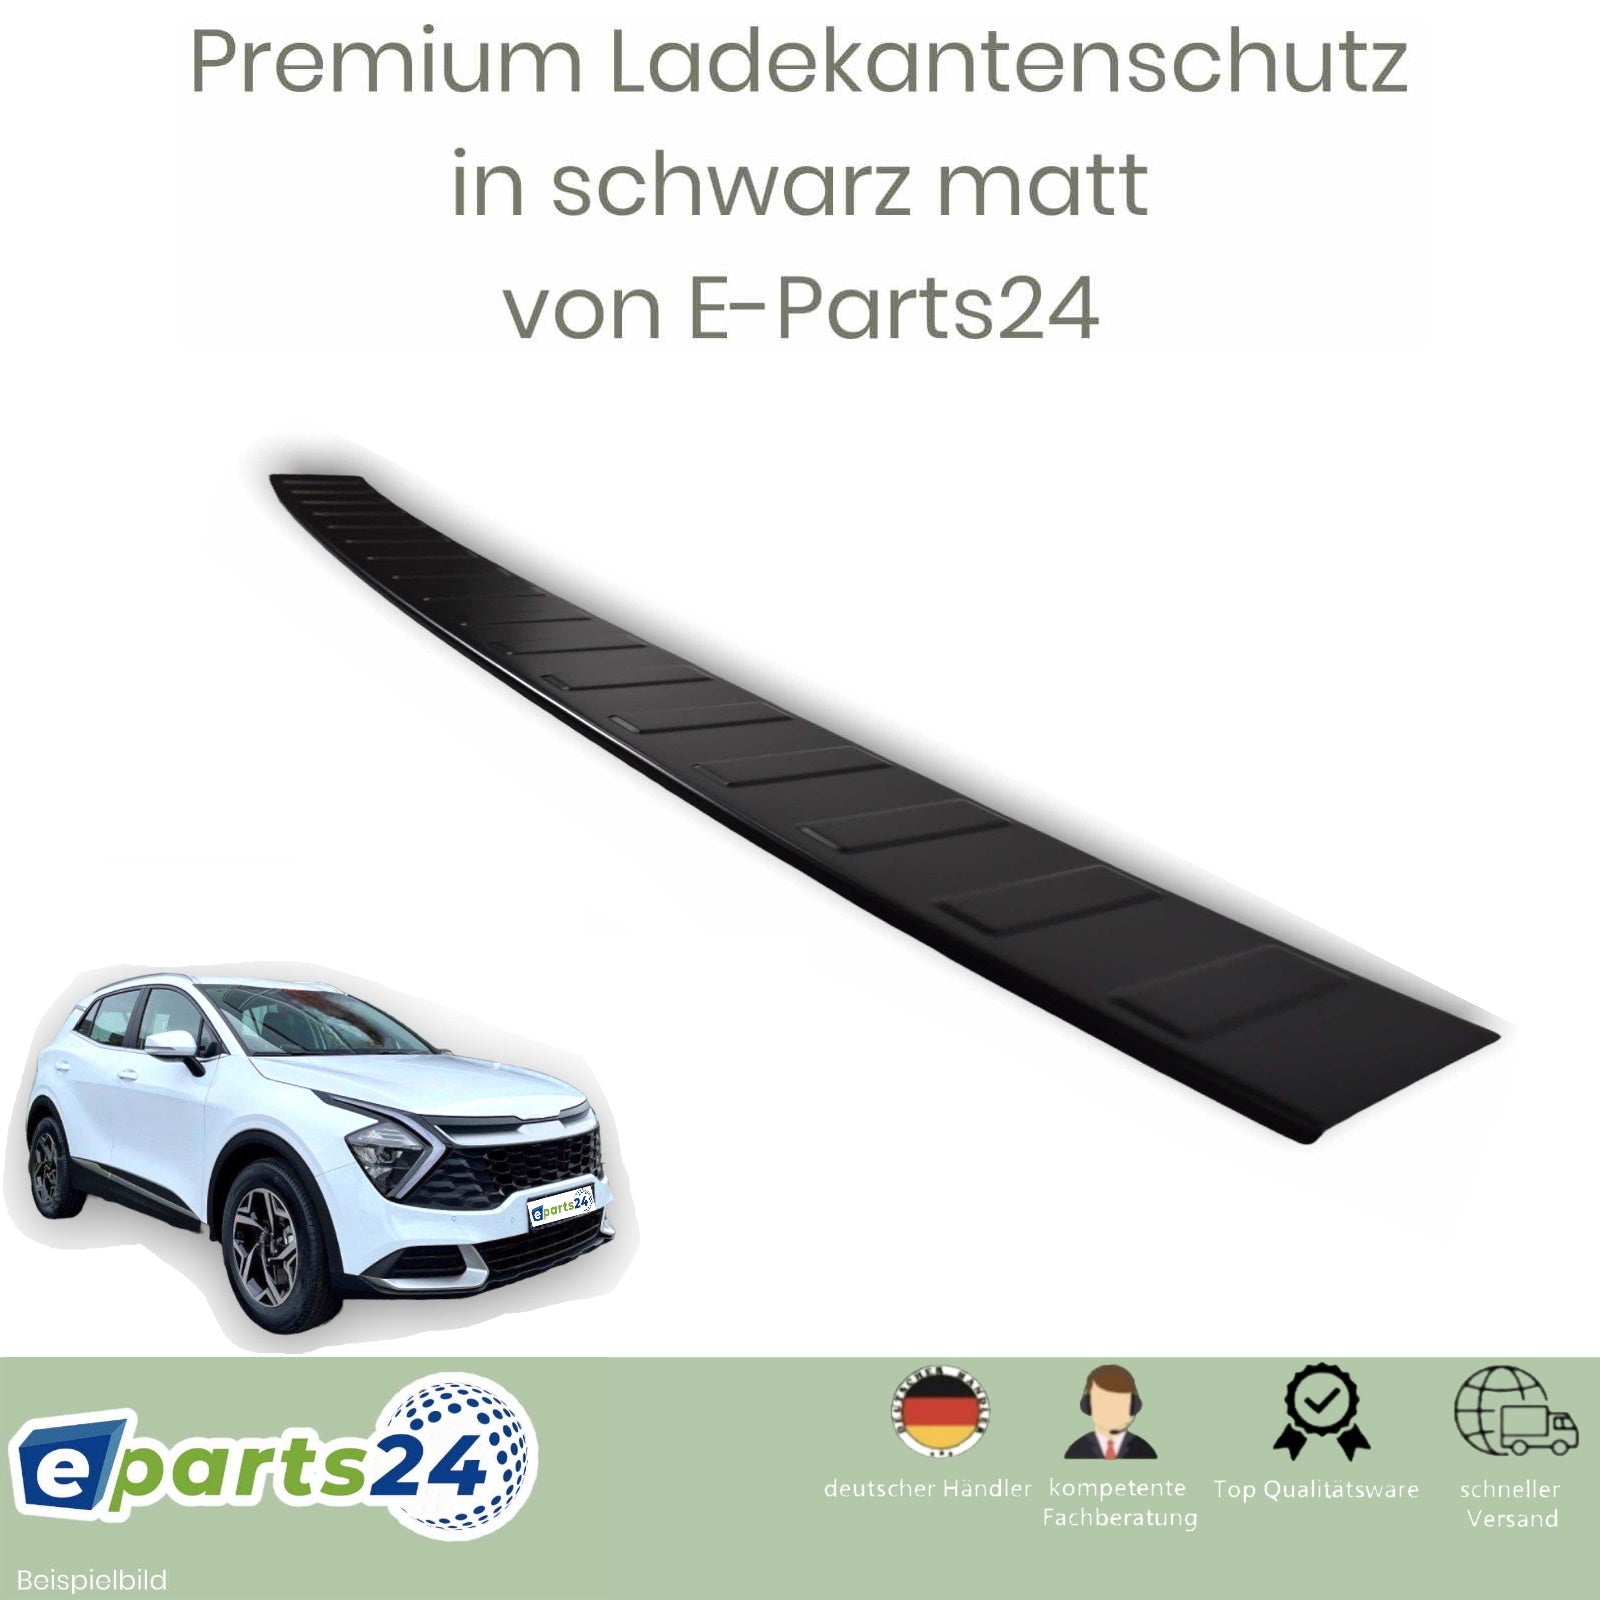 Edelstahl 2021 NQ5 für Heckschutz ab Sportage sch E-Parts24 Ladekantenschutz KIA –